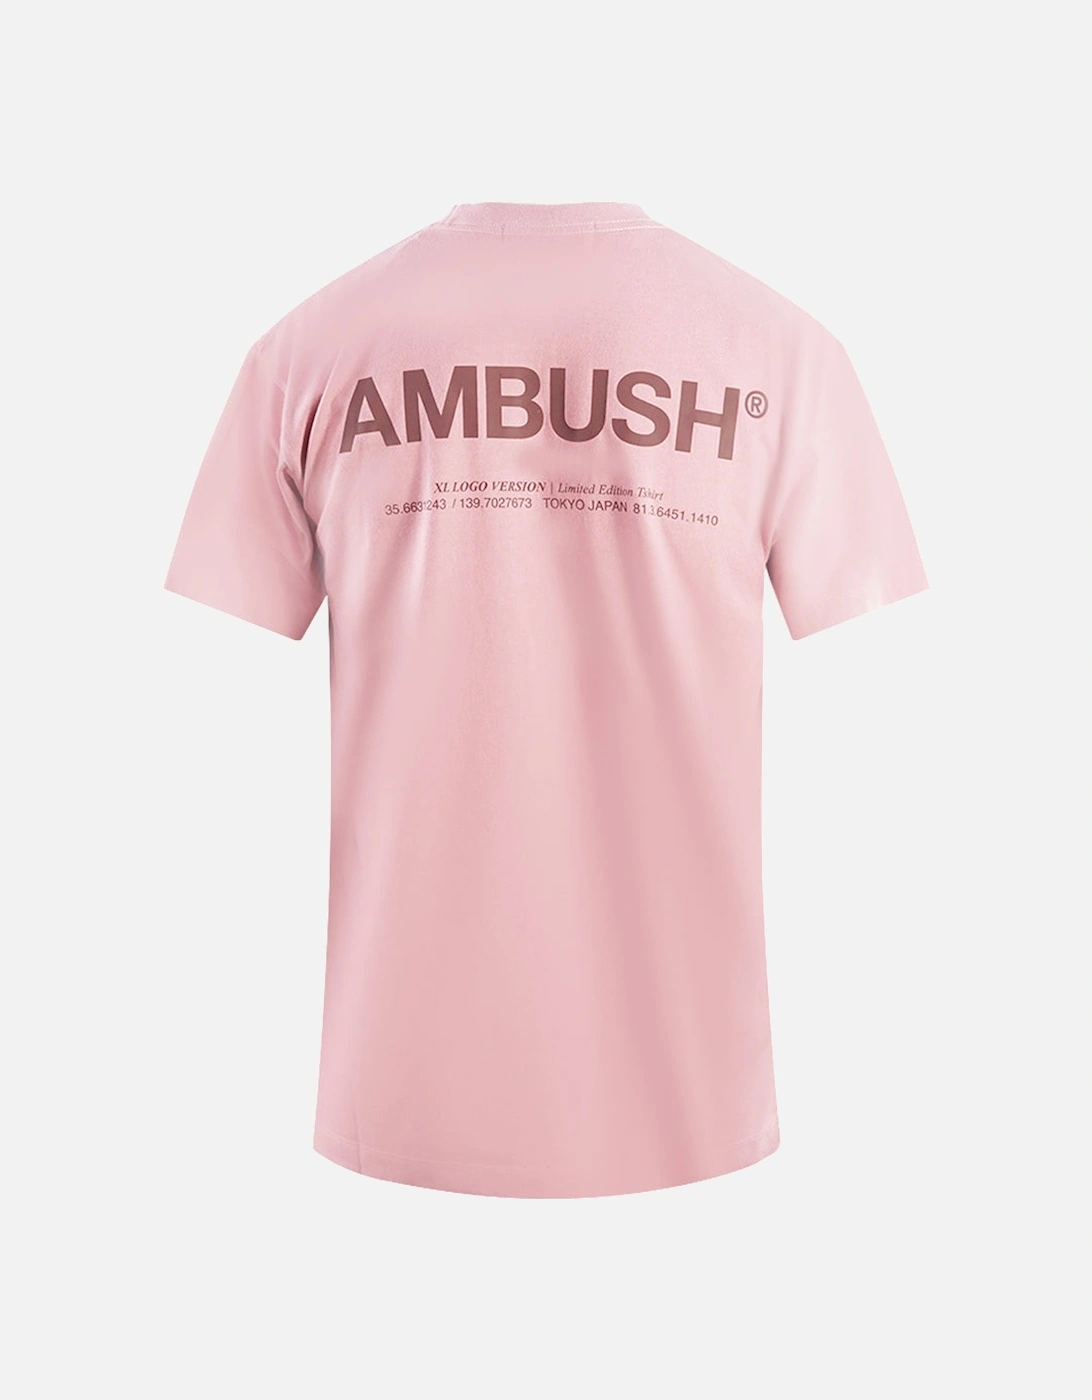 XL Pink T-Shirt